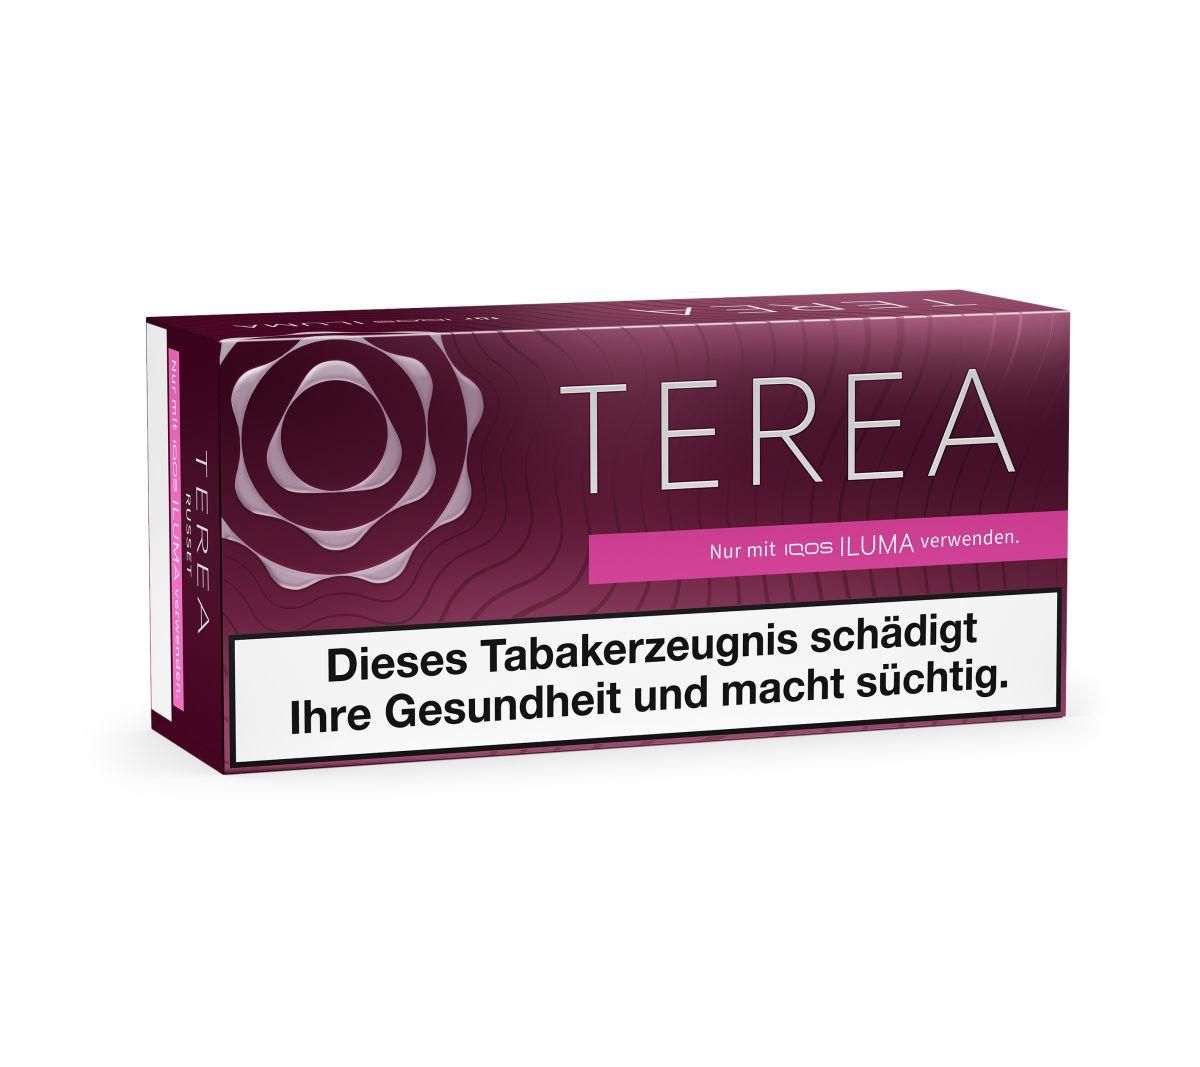 IQOS Terea - Russet Tabaksticks für IQOS ILUMA / ILUMA ONE (20